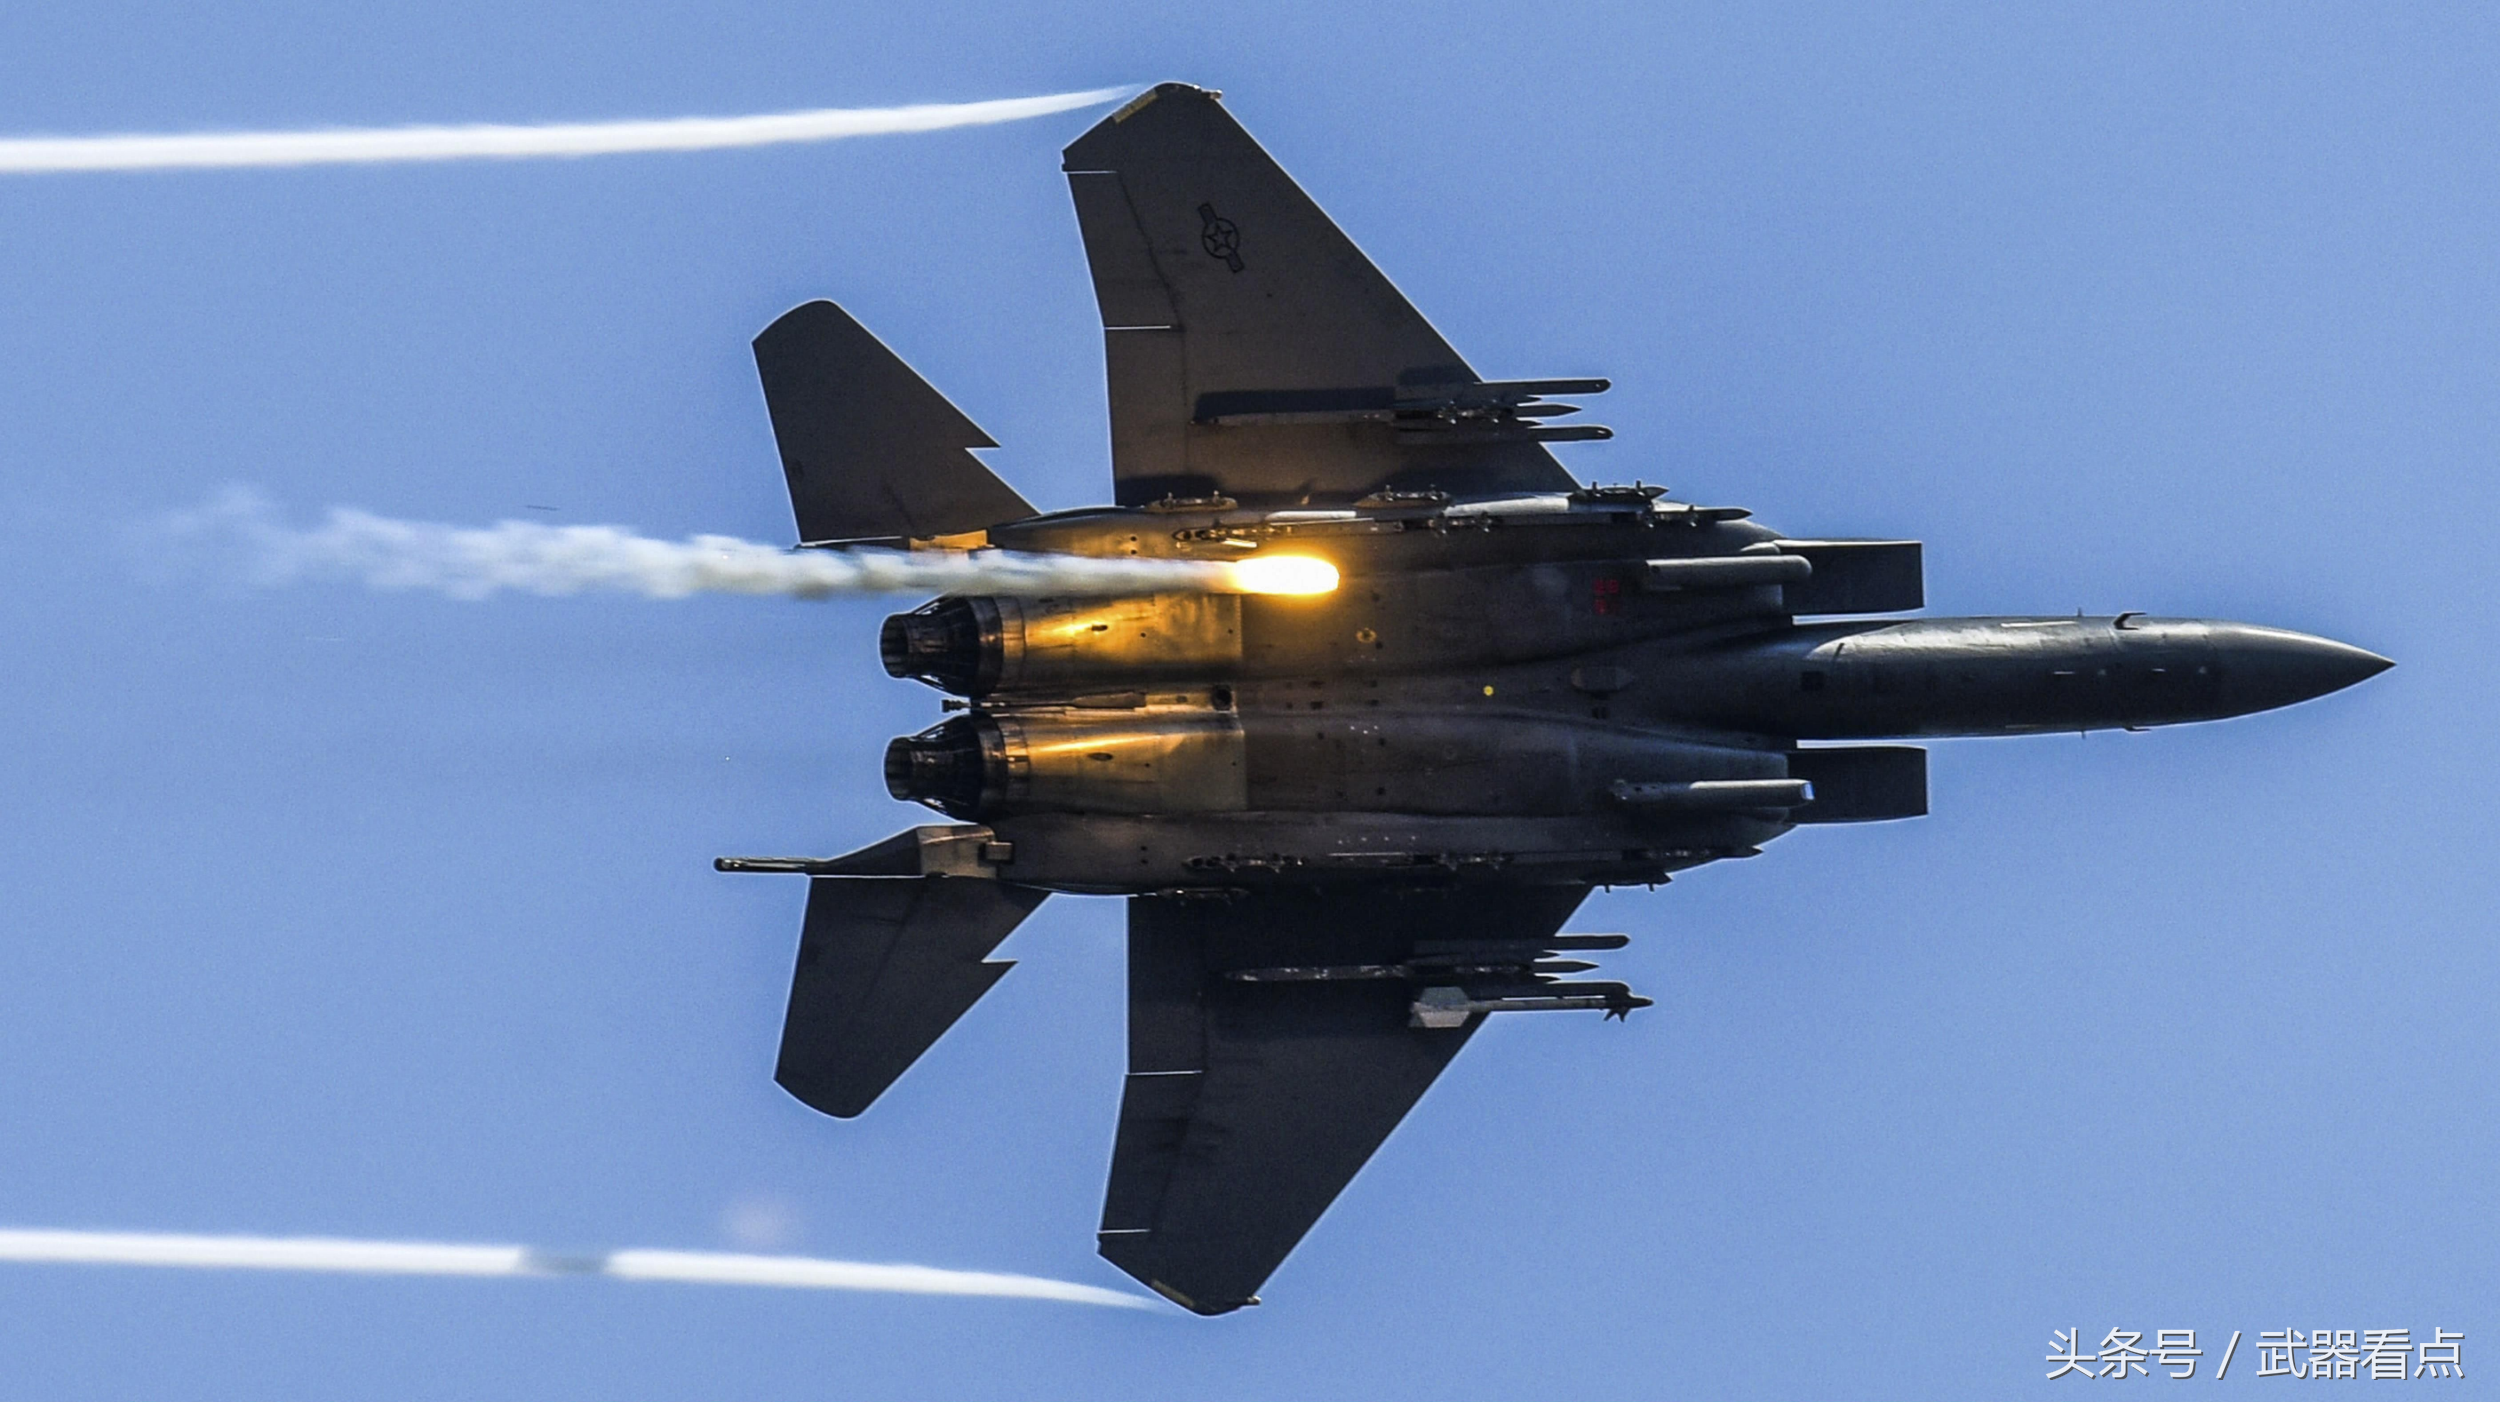 美国f15鹰式空中优势战斗机震撼视角拍摄高清相片